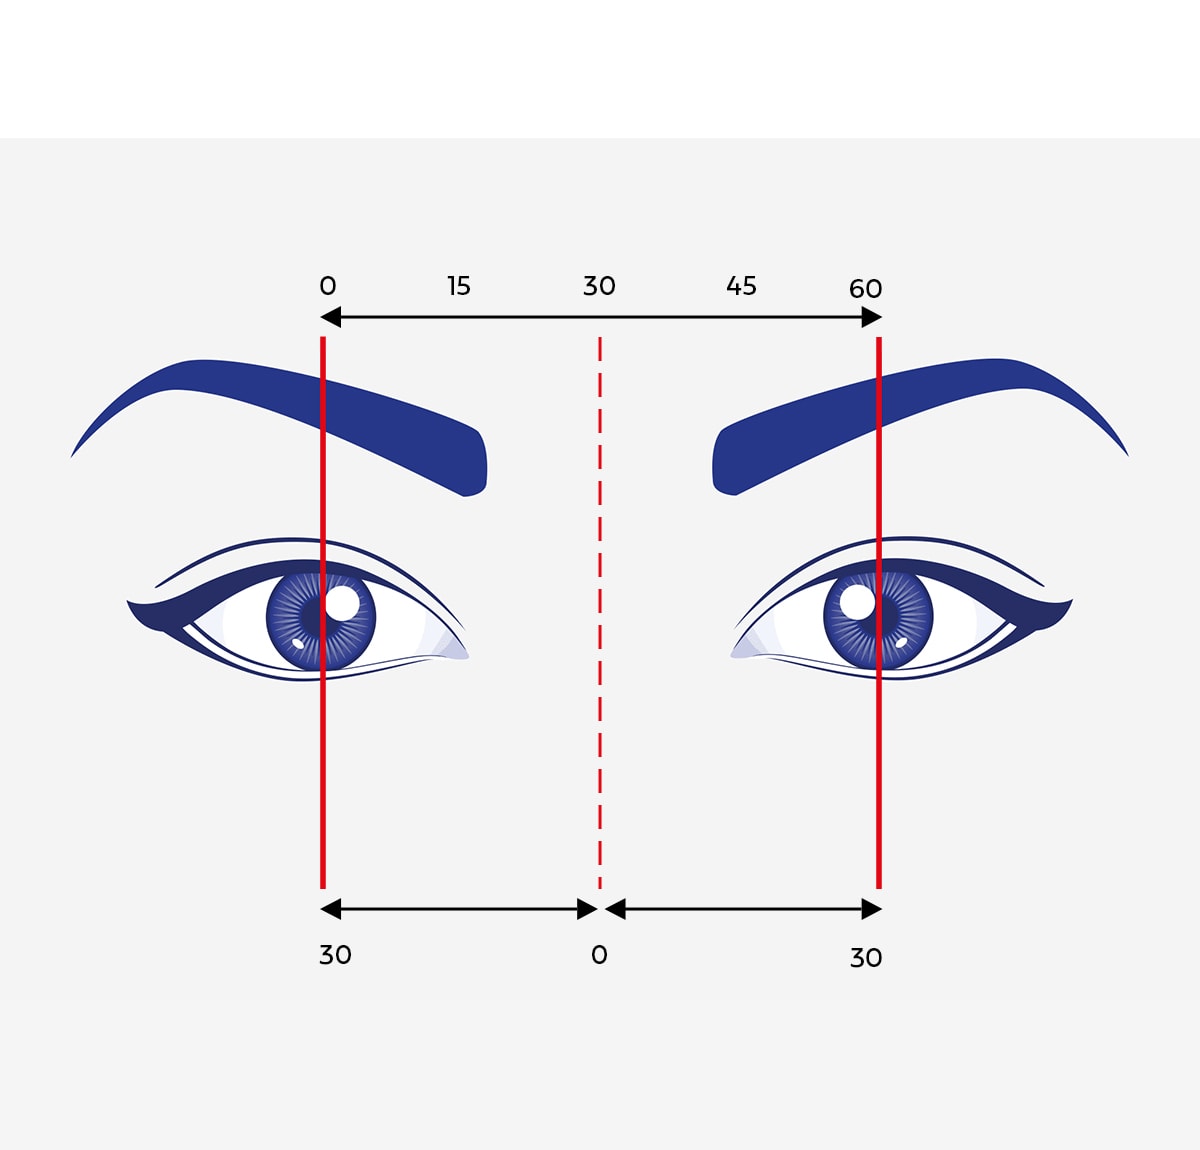 Grafisk fremstilling af øjne, markeret med pile og målinger, der beskriver pupilaflstand.